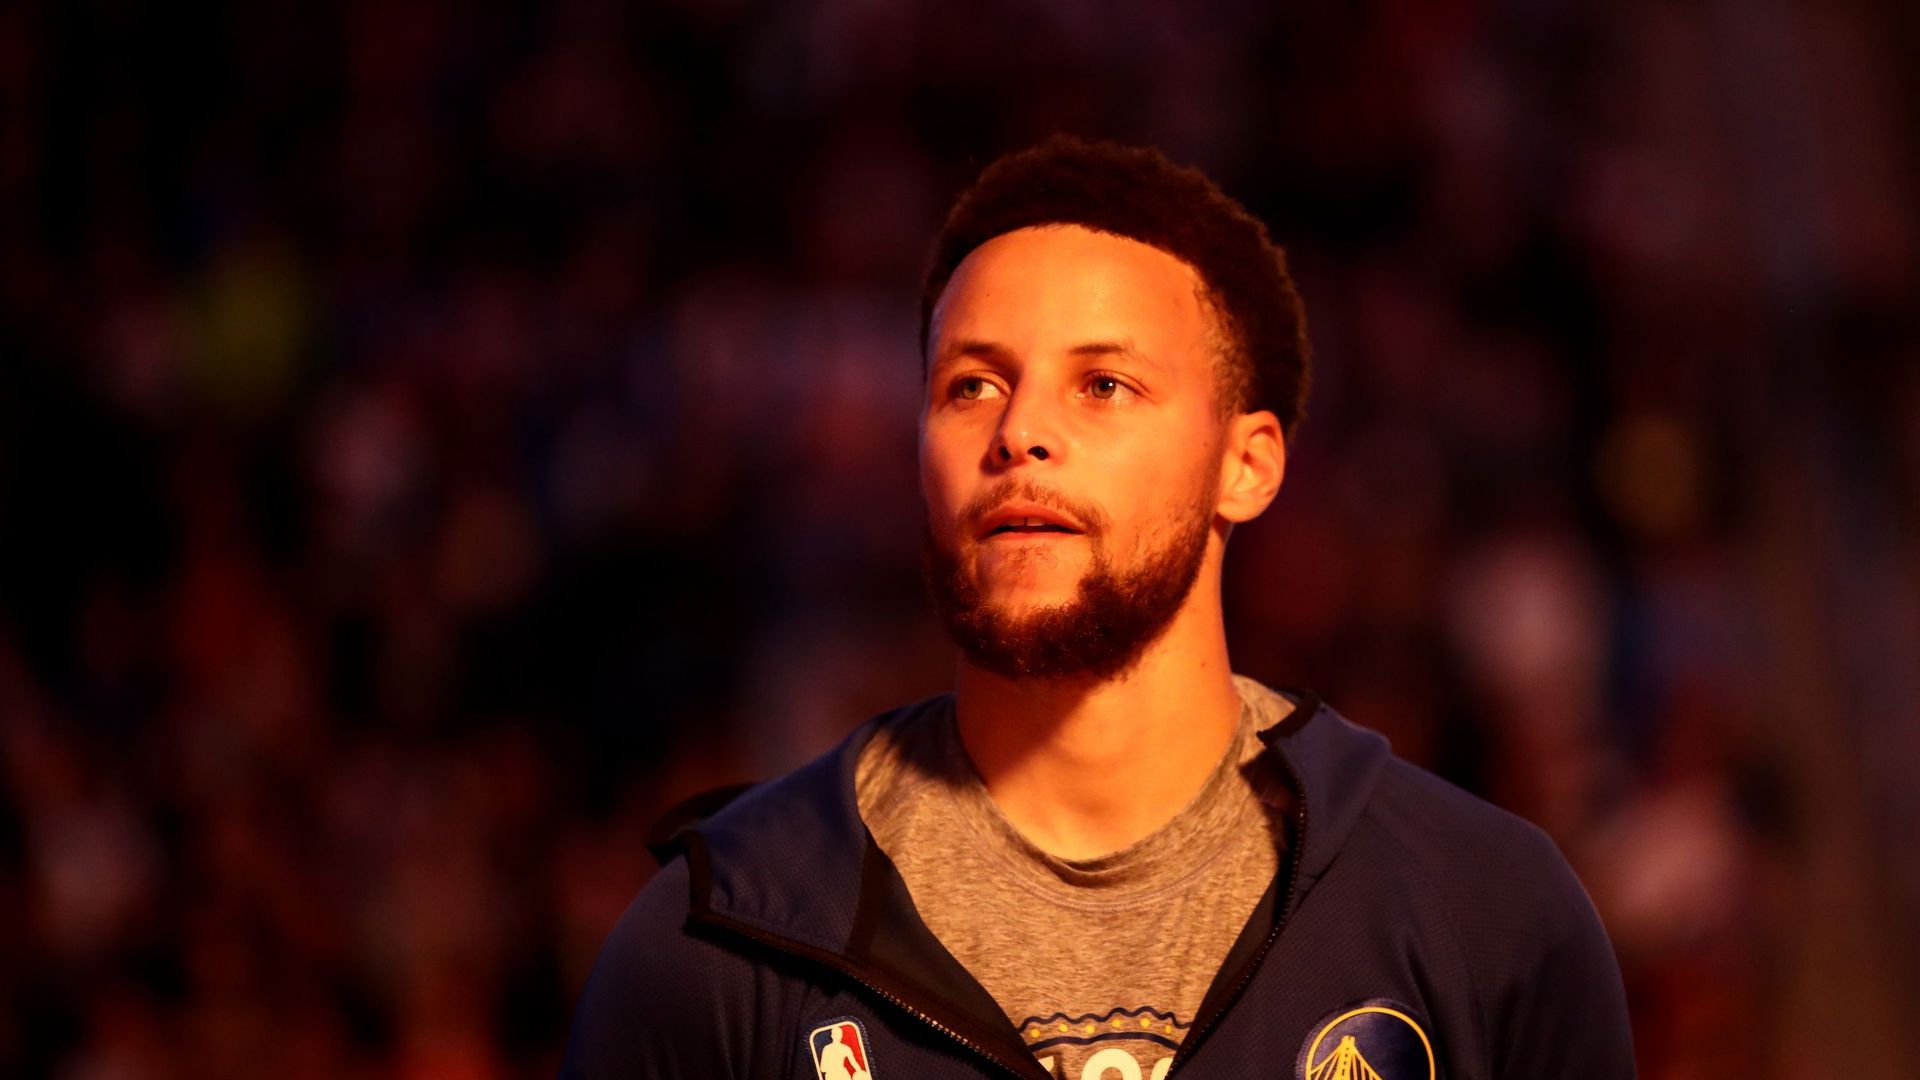 Stephen Curry, star des Golden State Warriors, marche contre le racisme, accompagné de plusieurs coéquipiers.